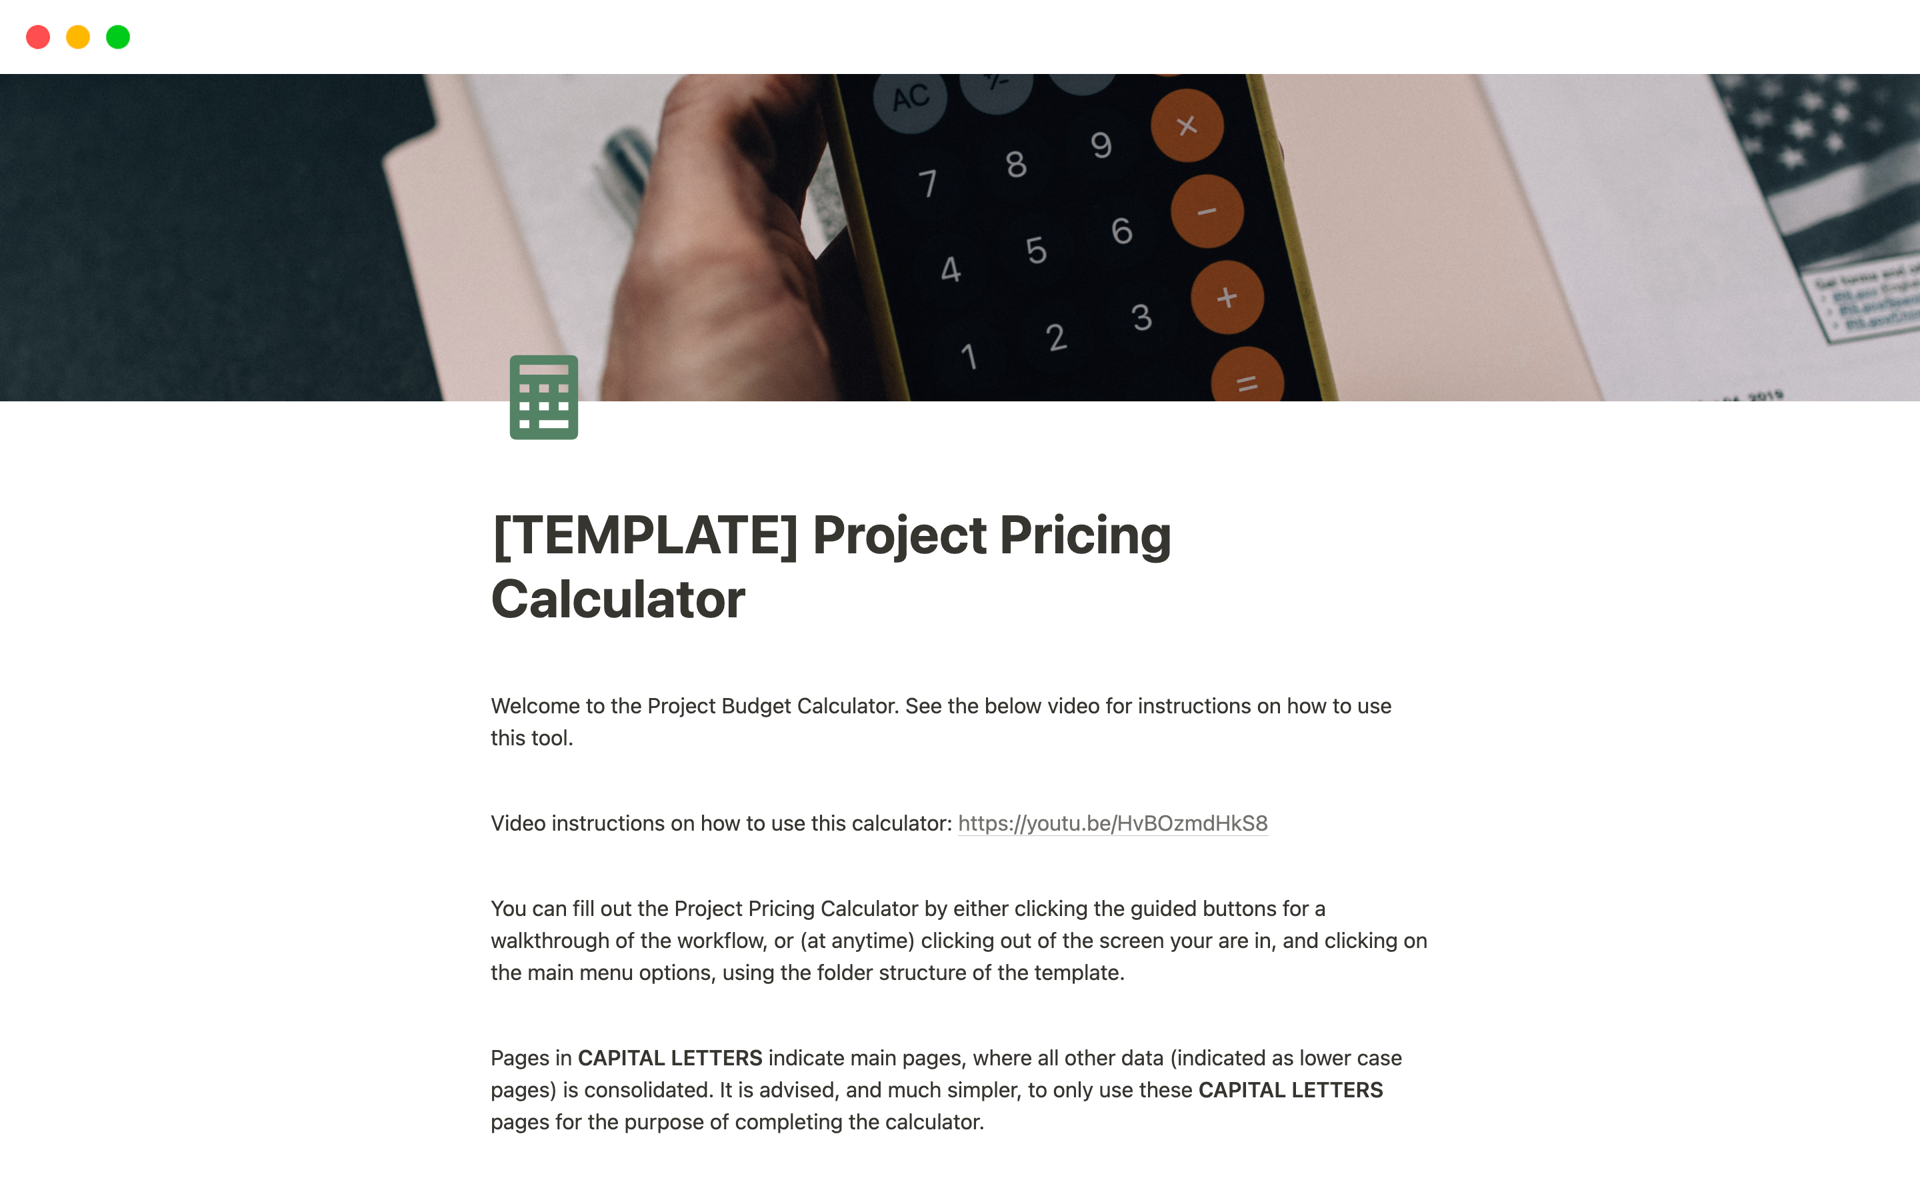 Uma prévia do modelo para Project Pricing Calculator